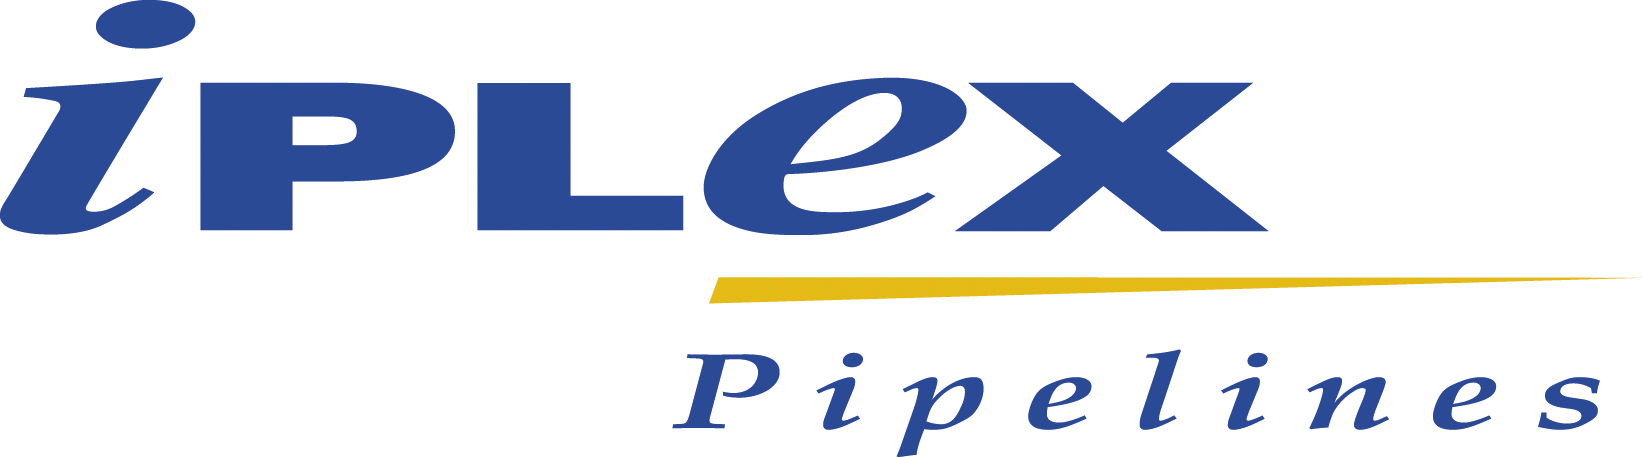 IPX92 Iplex Pipelines-LOGO_2014